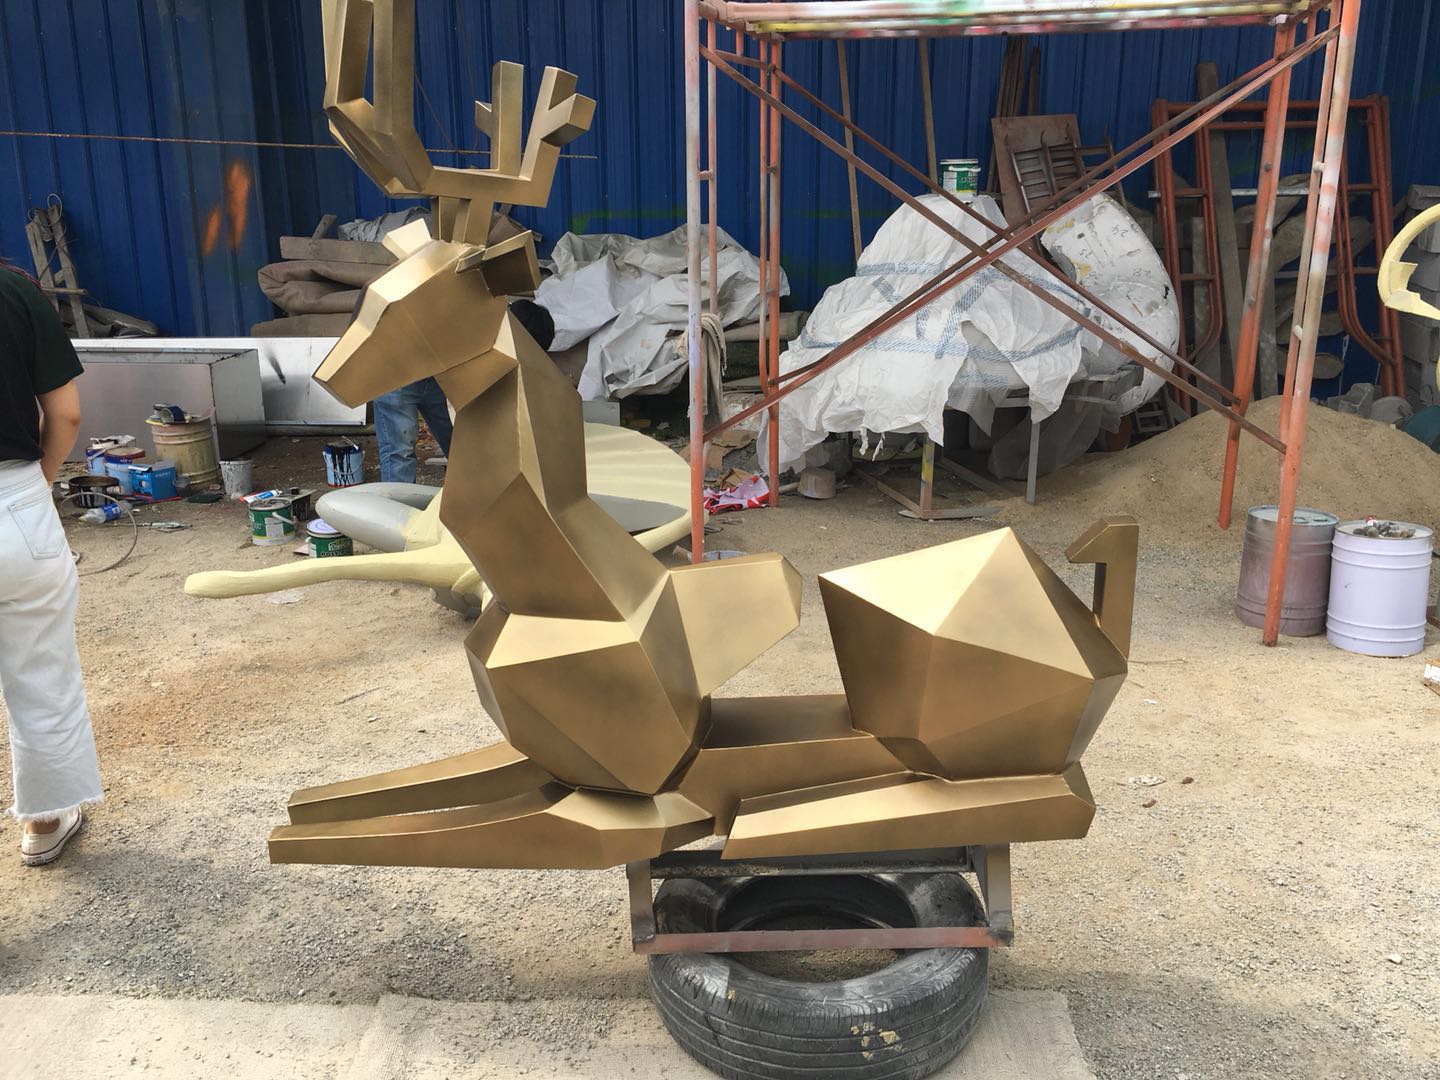 金属锻造抽象鹿 抽象鹿报价 抽象鹿批发 抽象鹿供应商 抽象鹿生产厂家 抽象鹿哪家好